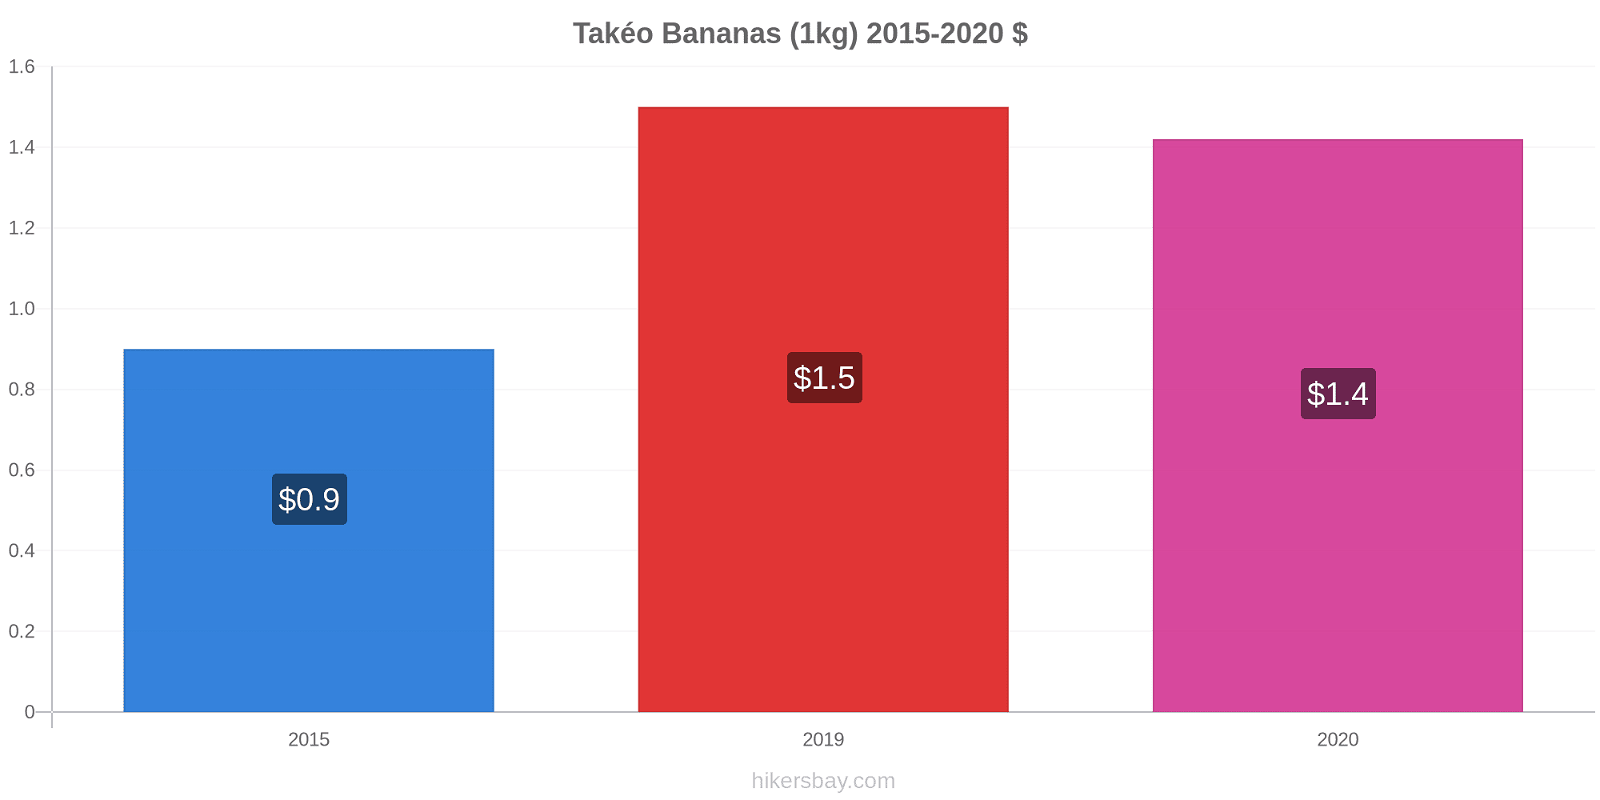 Takéo variação de preço Banana (1kg) hikersbay.com